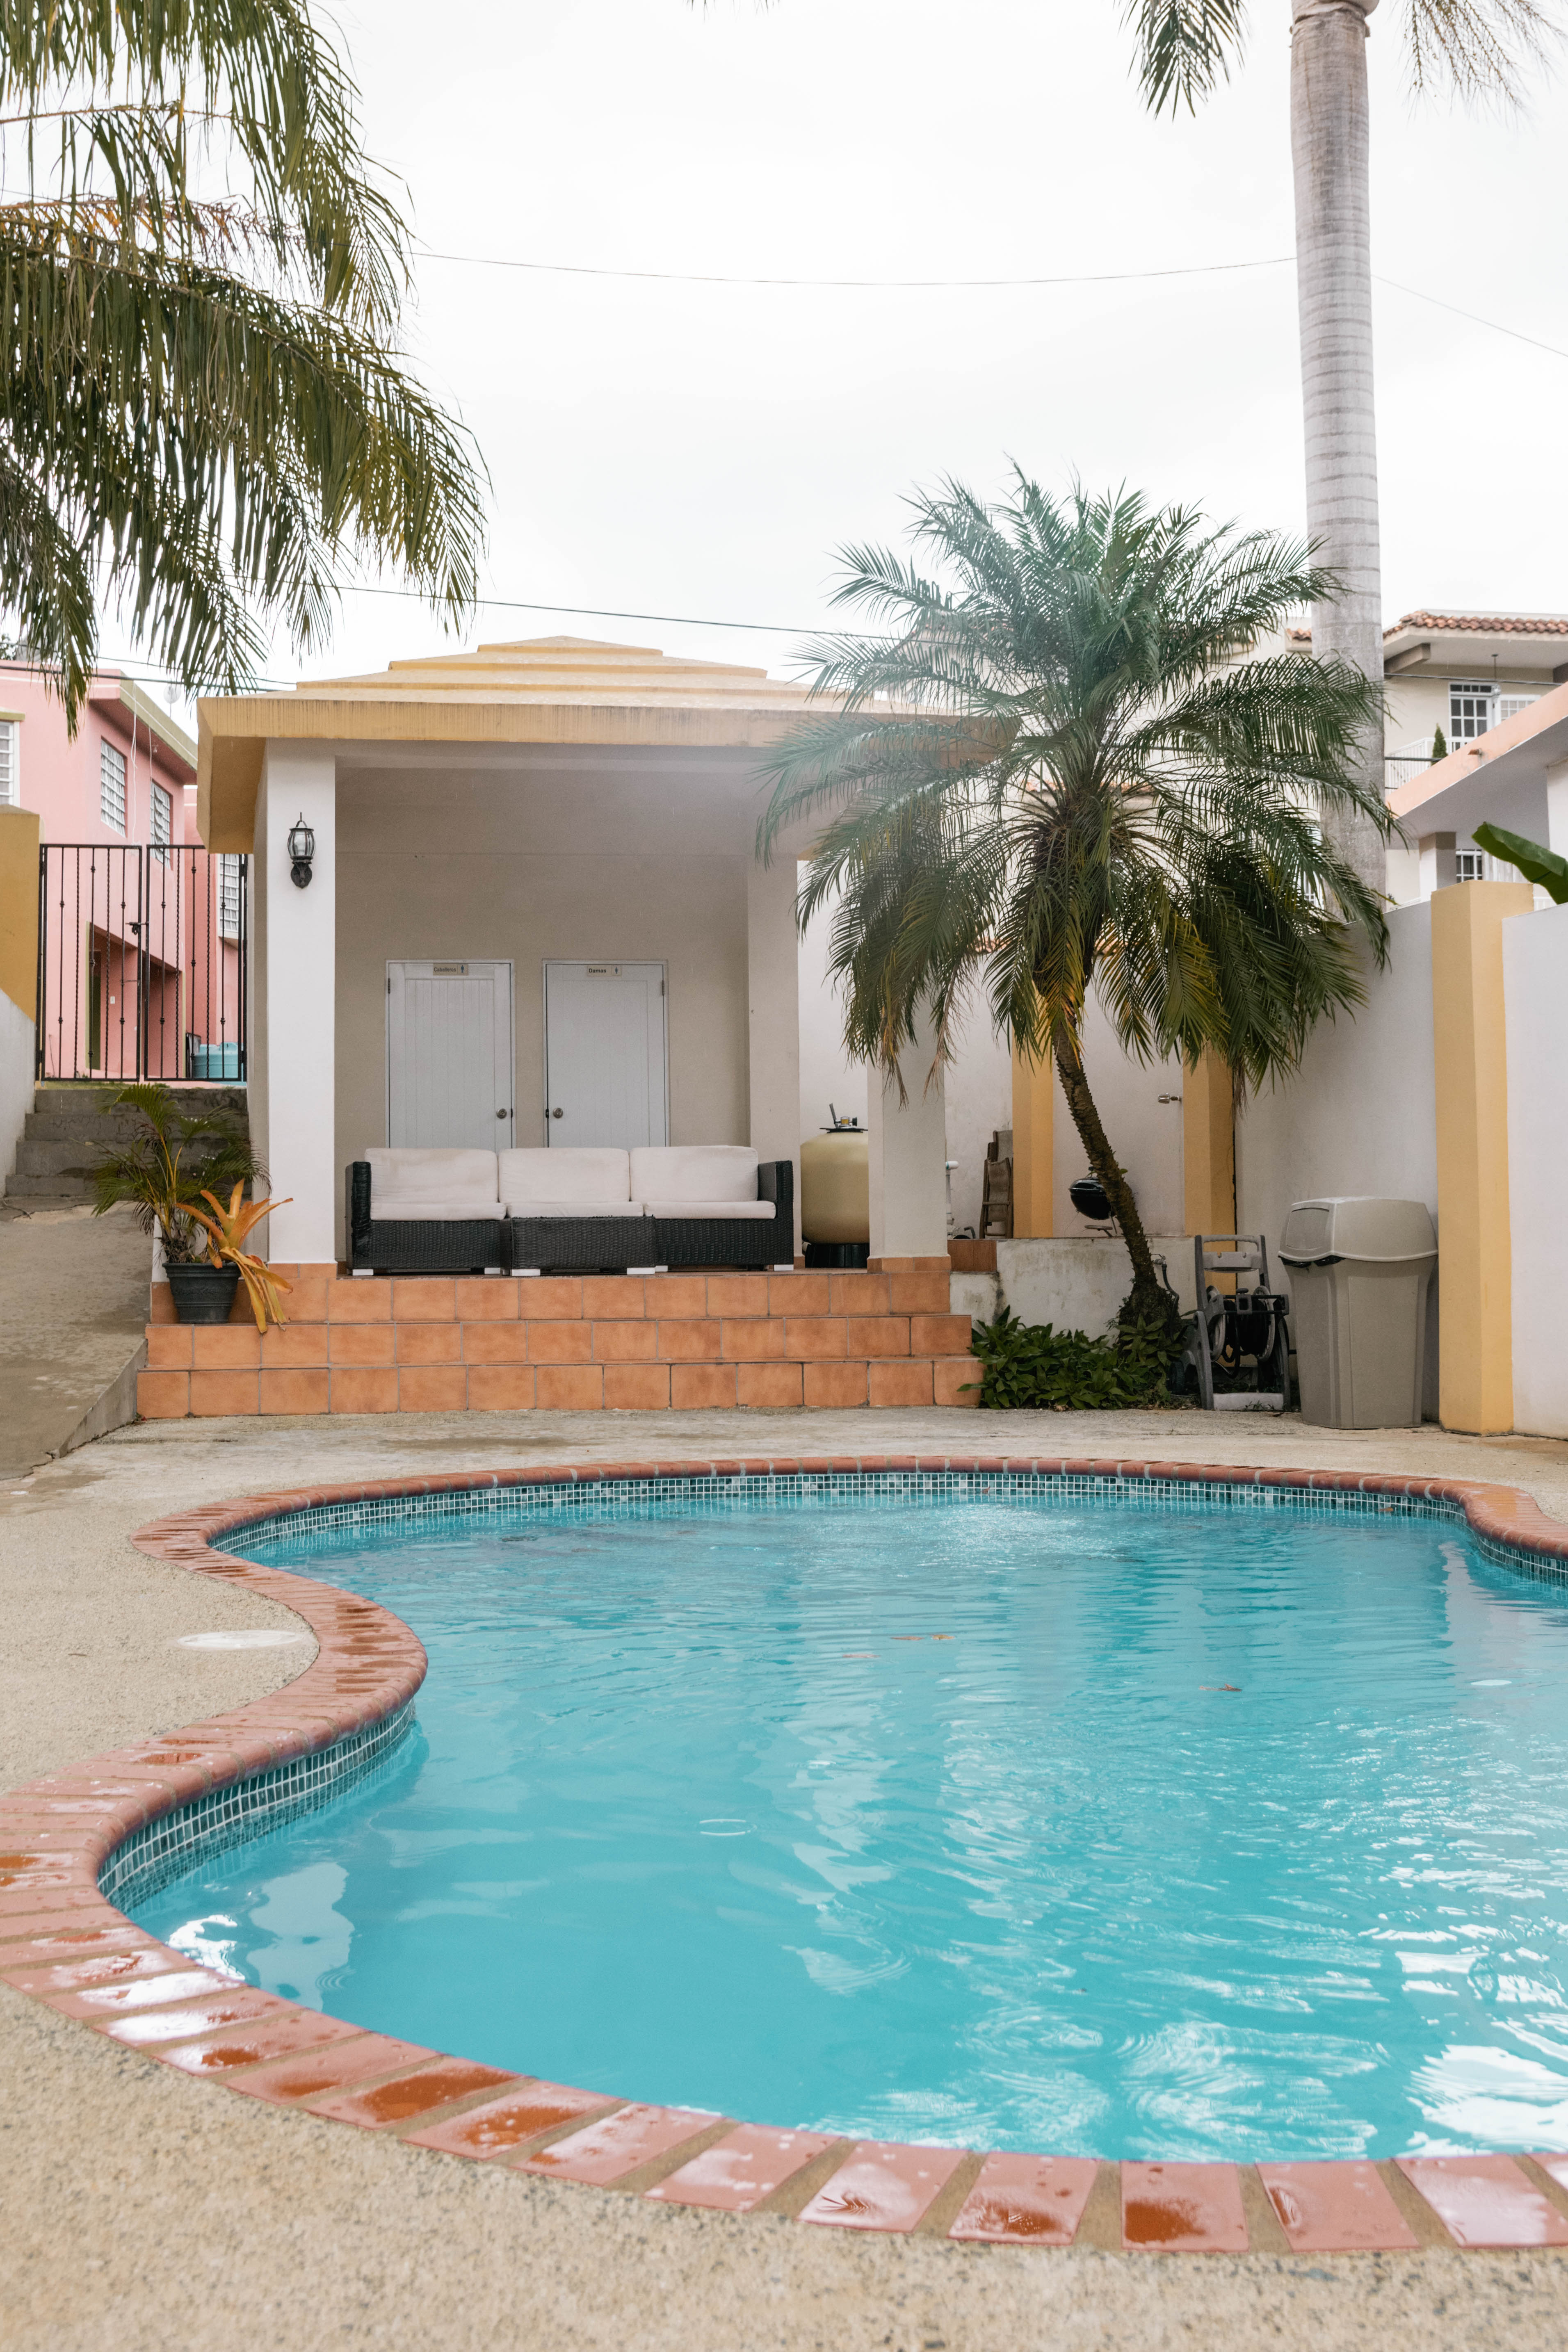 Villa Real Amplio Apartamento 102 con Piscina - Apartamentos en alquiler en  Aguada, Aguada, Puerto Rico - Airbnb